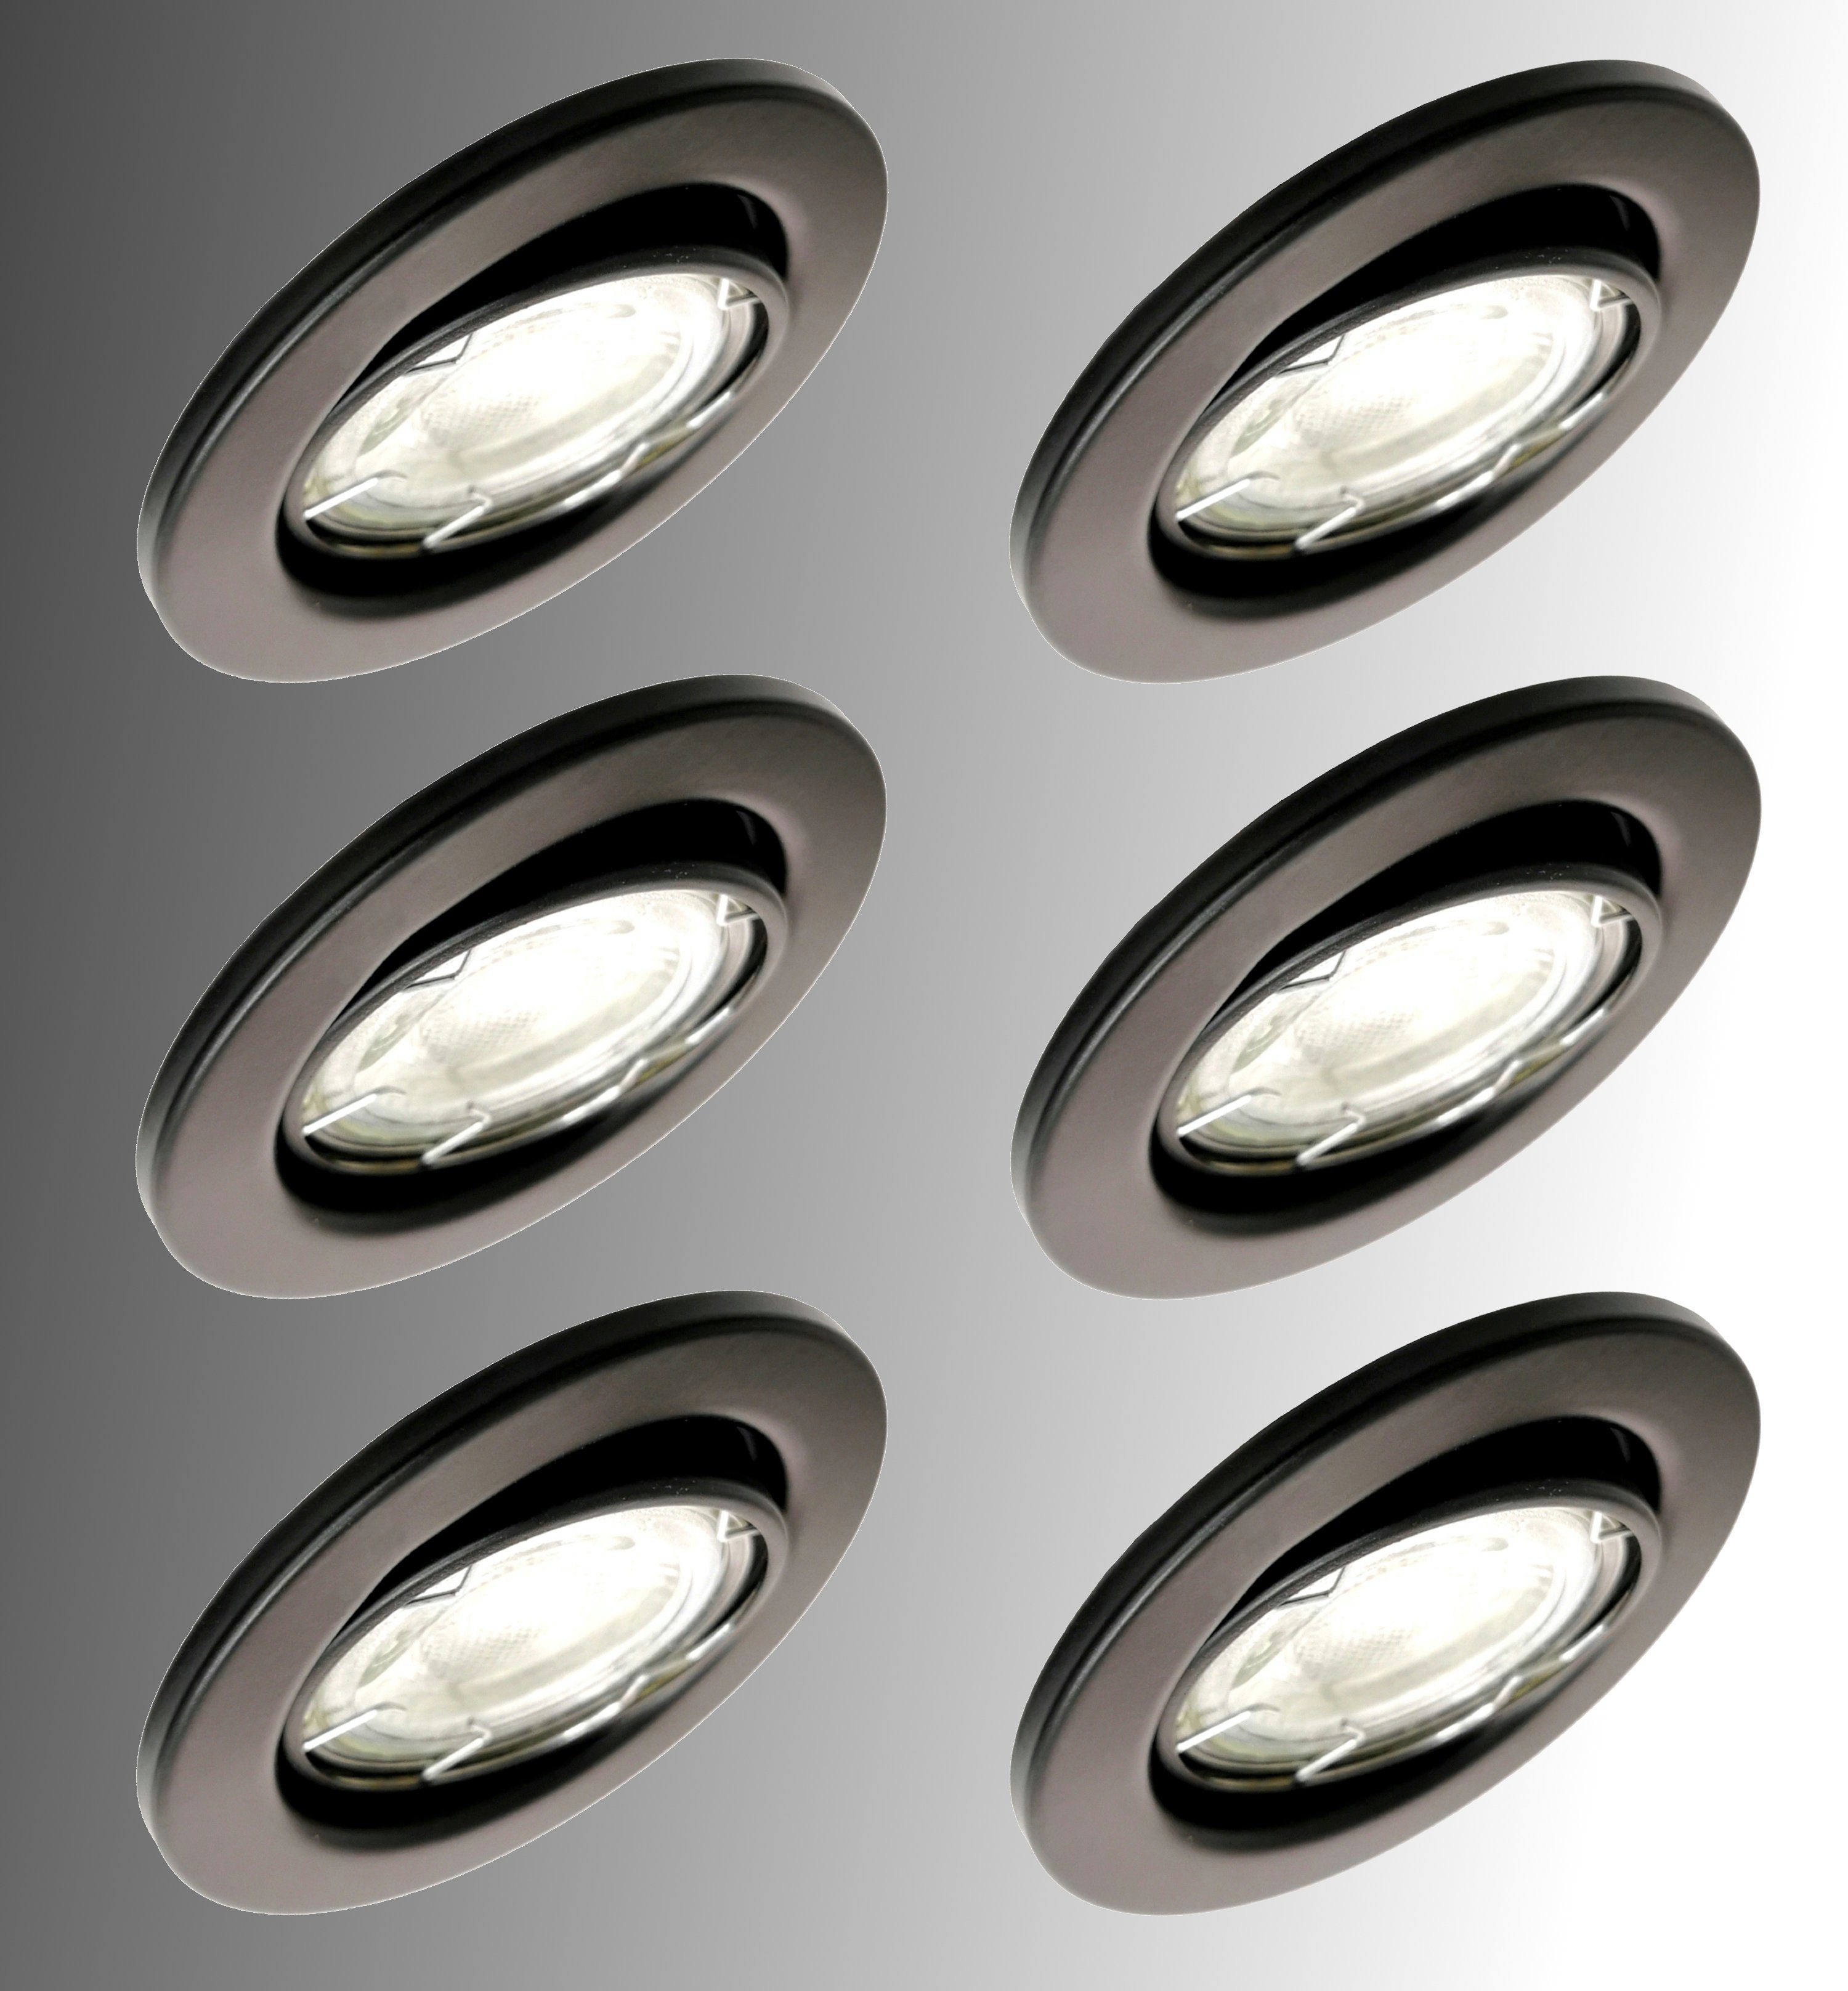 9W LED Einbaustrahler Einbau Leuchte Deckenleuchte Eckig Ultra Flach Lampe Neu 